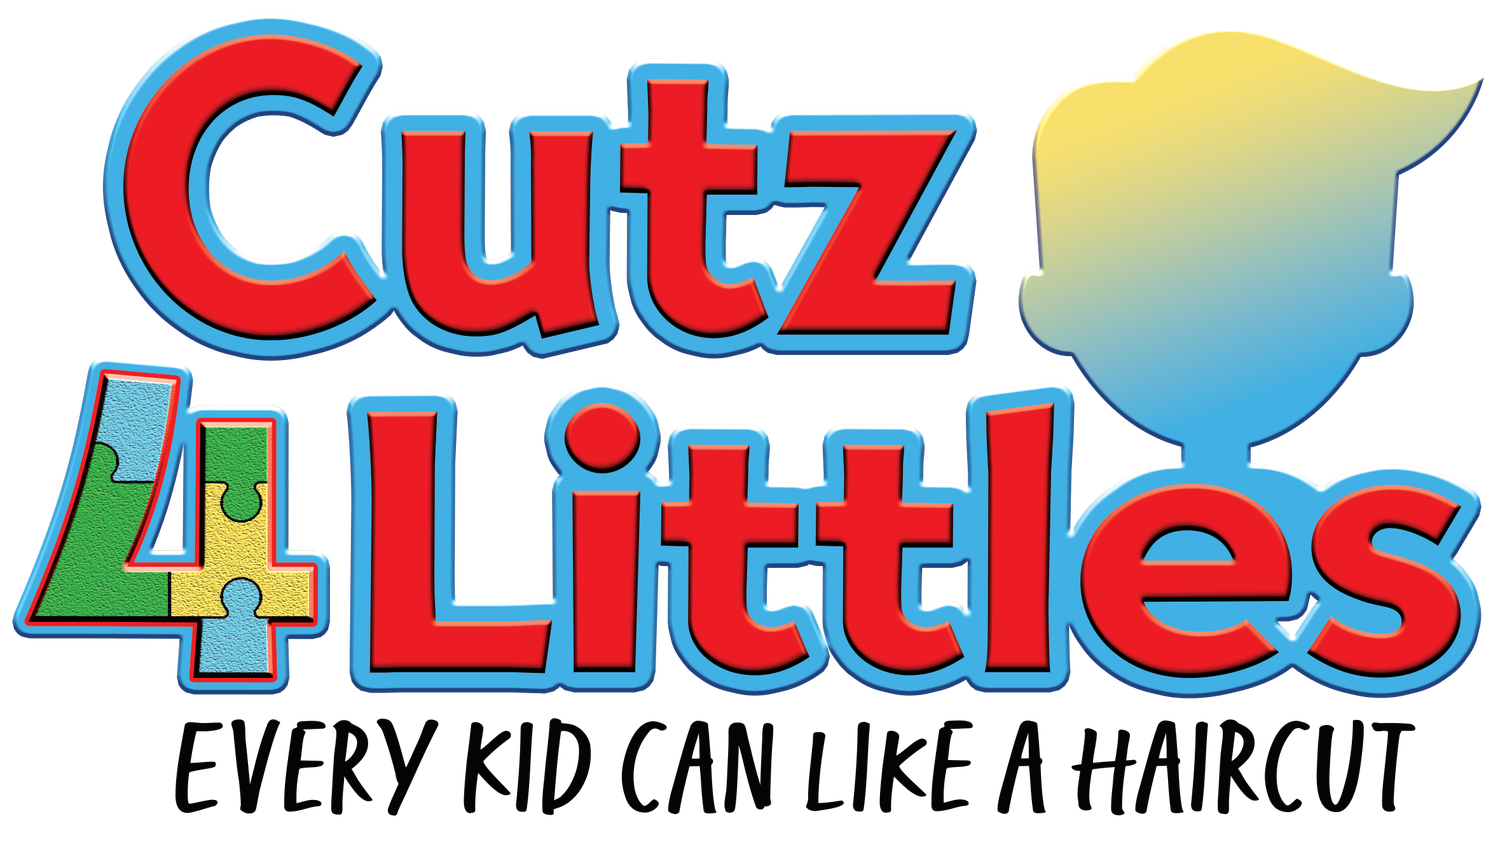 Cutz 4 Littles 